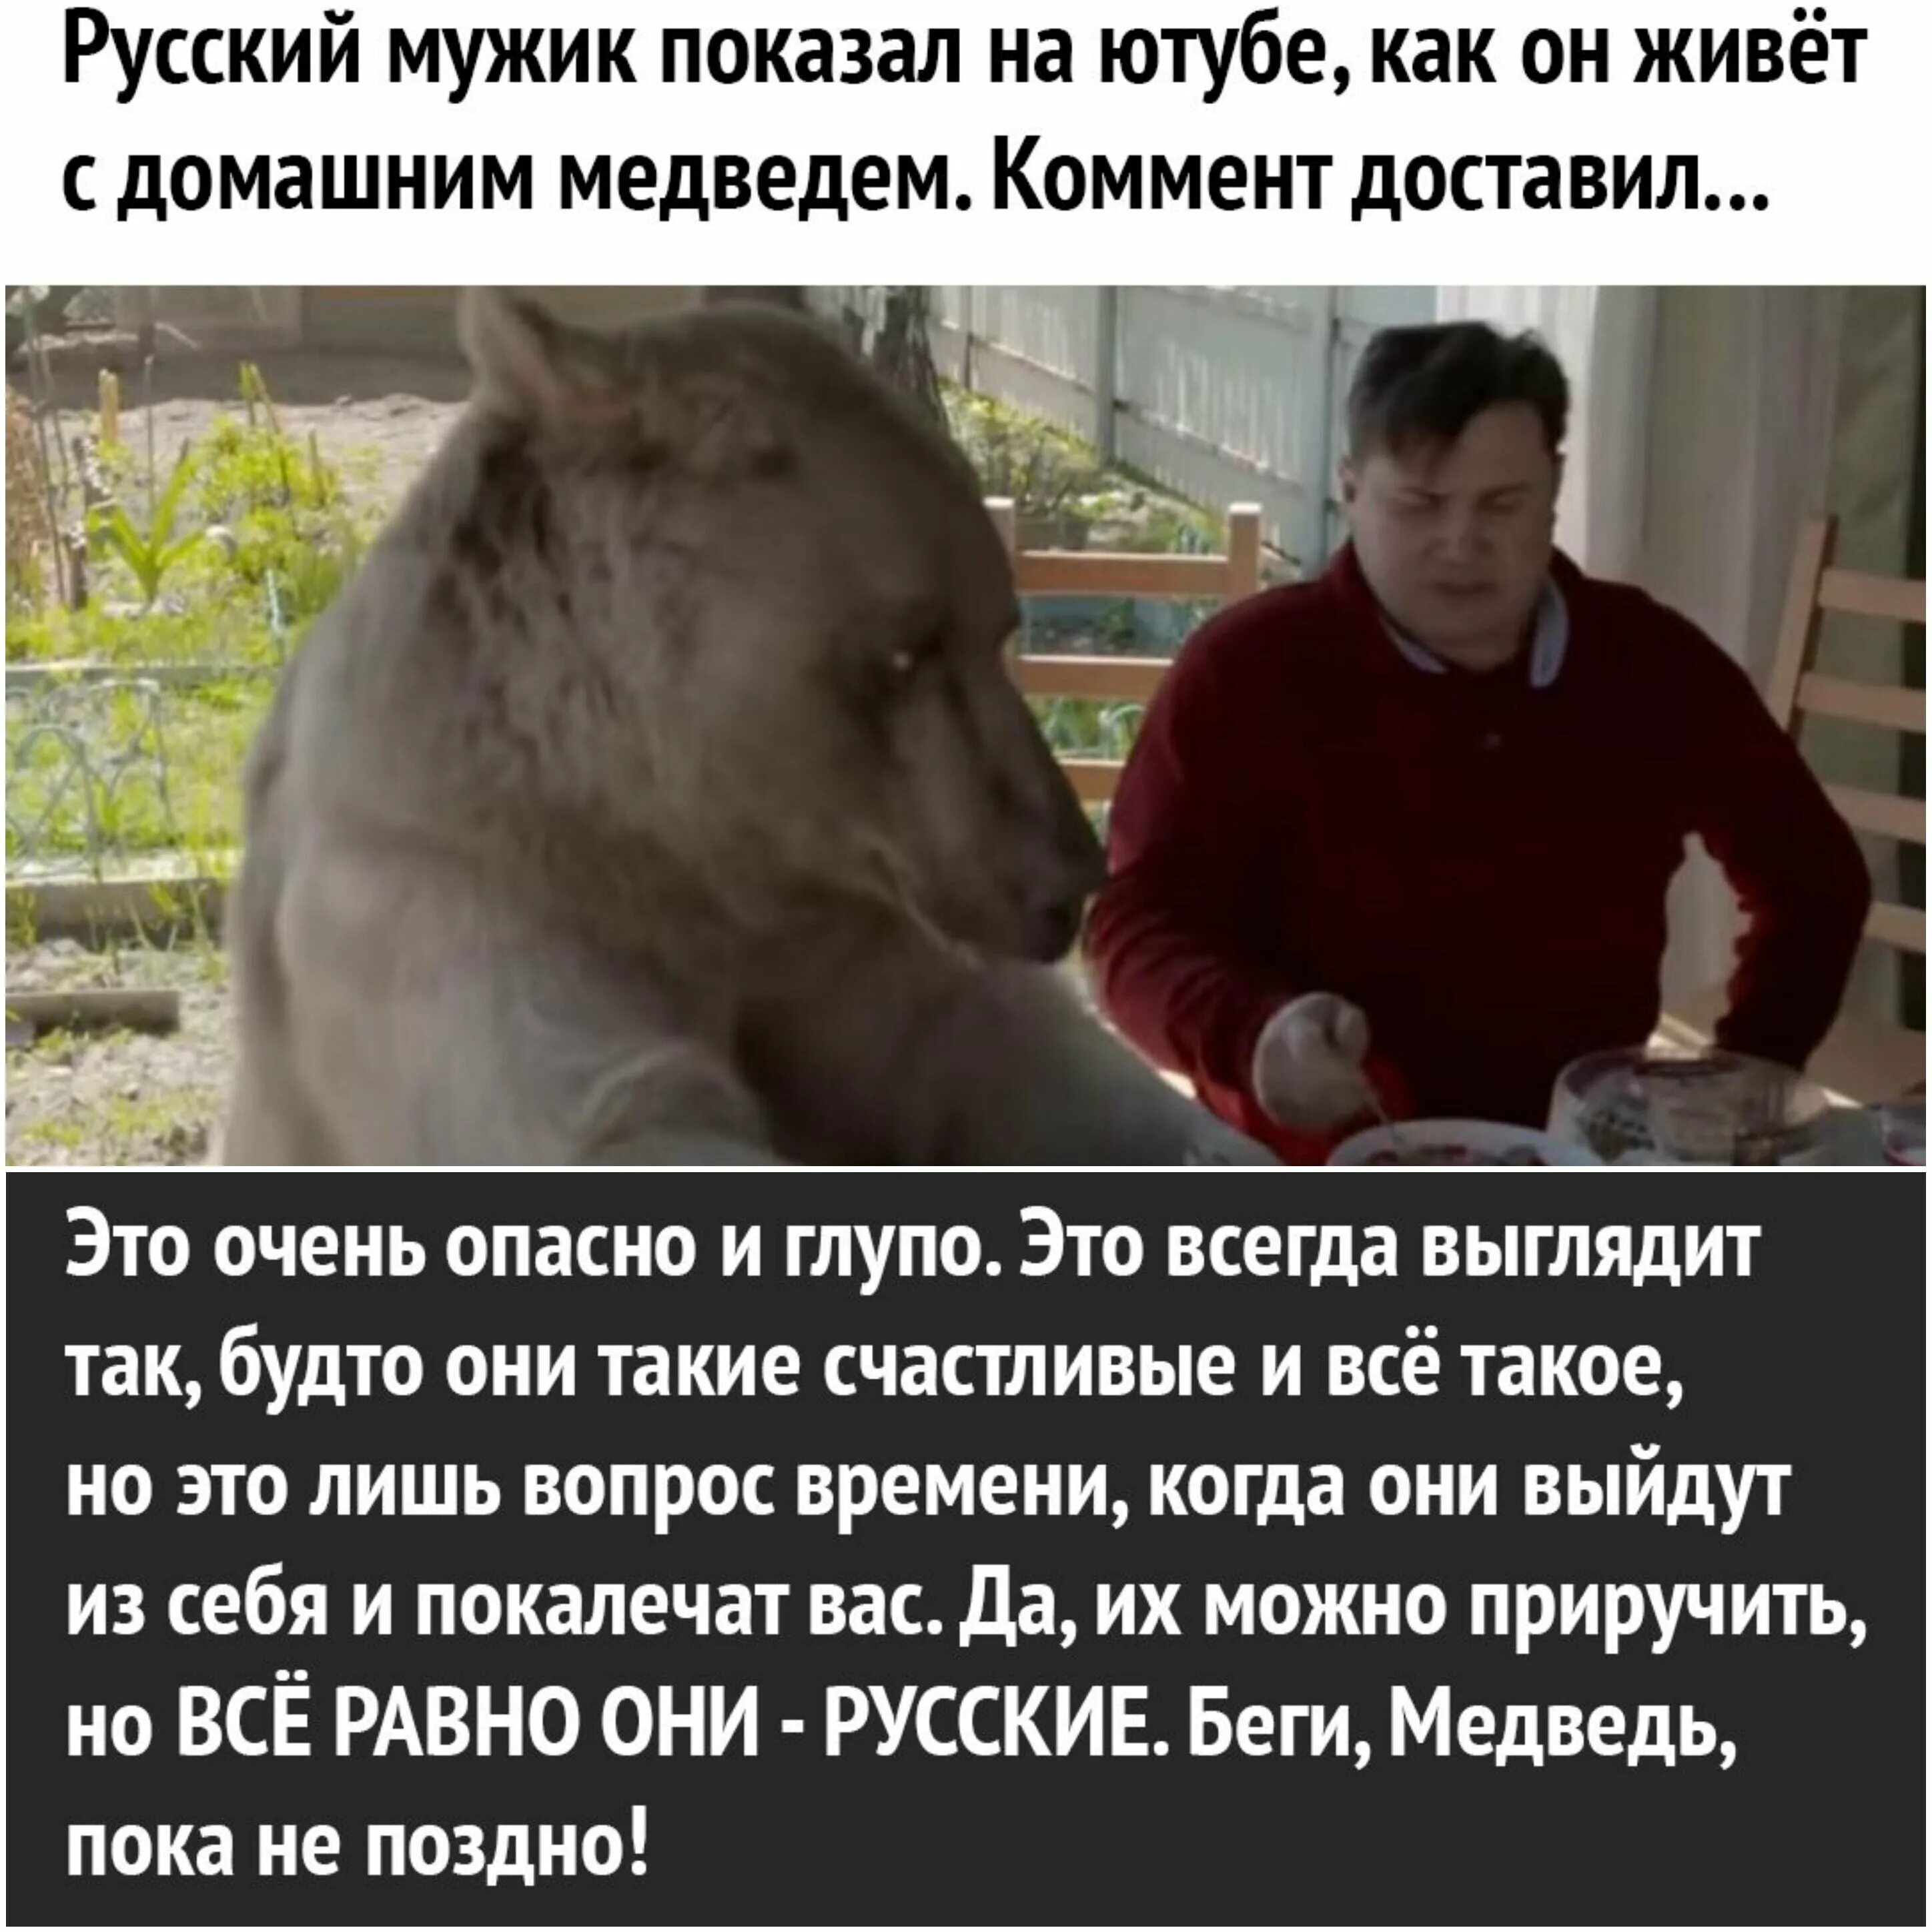 Беги медведь беги это русские. Мемы с медведем. Беги медведь пока не поздно это русские. Русский медведь Мем. Может быть показалось текст